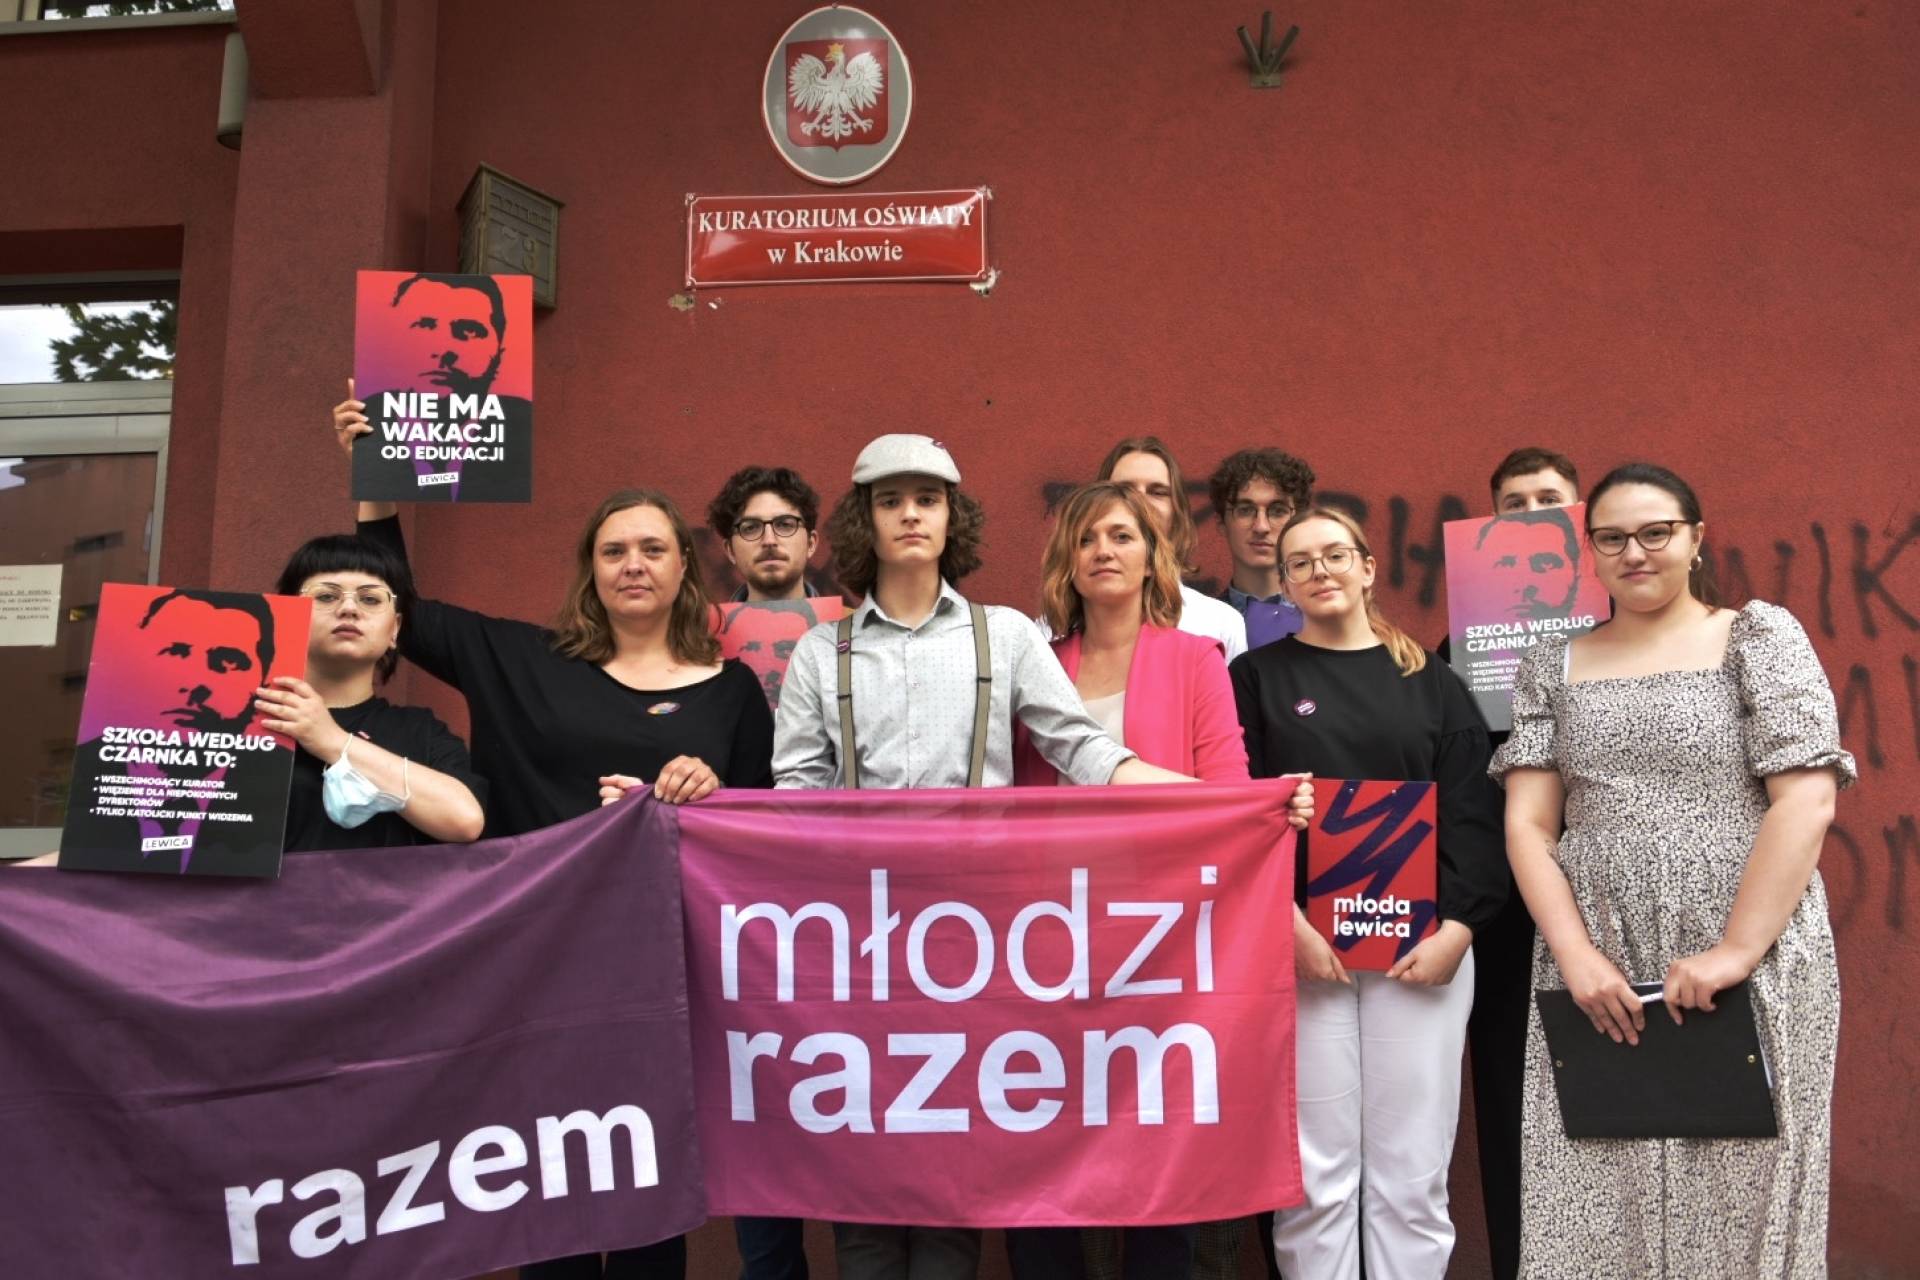 Protest w Krakowie: "Minister urządza festiwal nienawiści i homofobii"